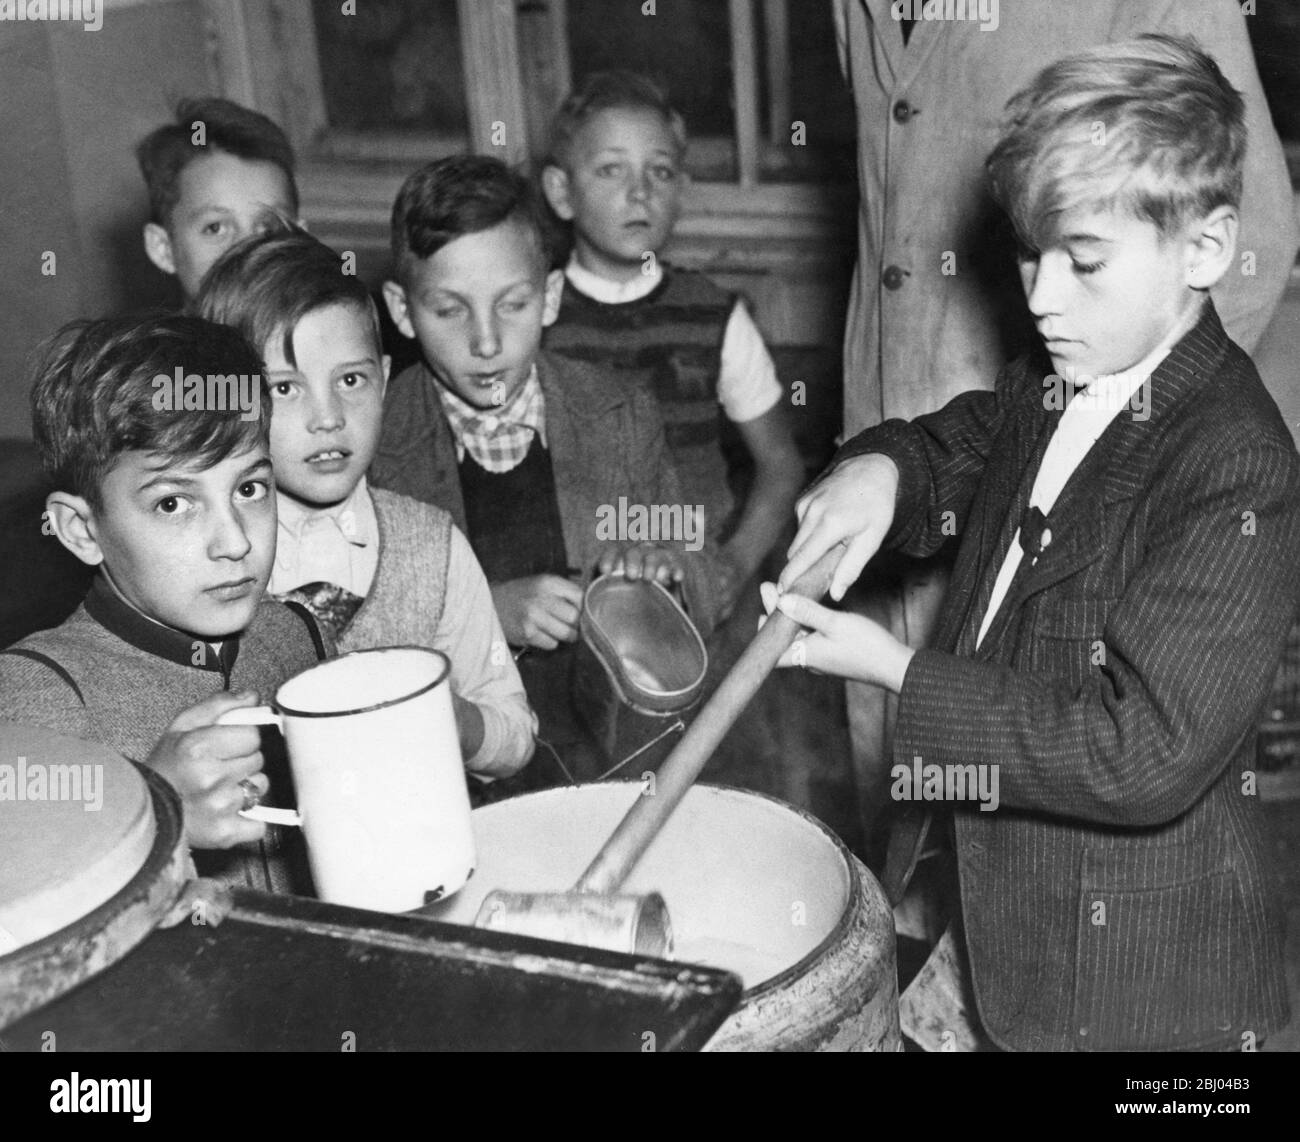 Allemagne d'après-guerre. Octobre 1947 - les garçons affamés de l'école publique de Munich âgés de 11 et 12 ans se sont mis à recevoir des rations alimentaires à l'heure du déjeuner. Banque D'Images